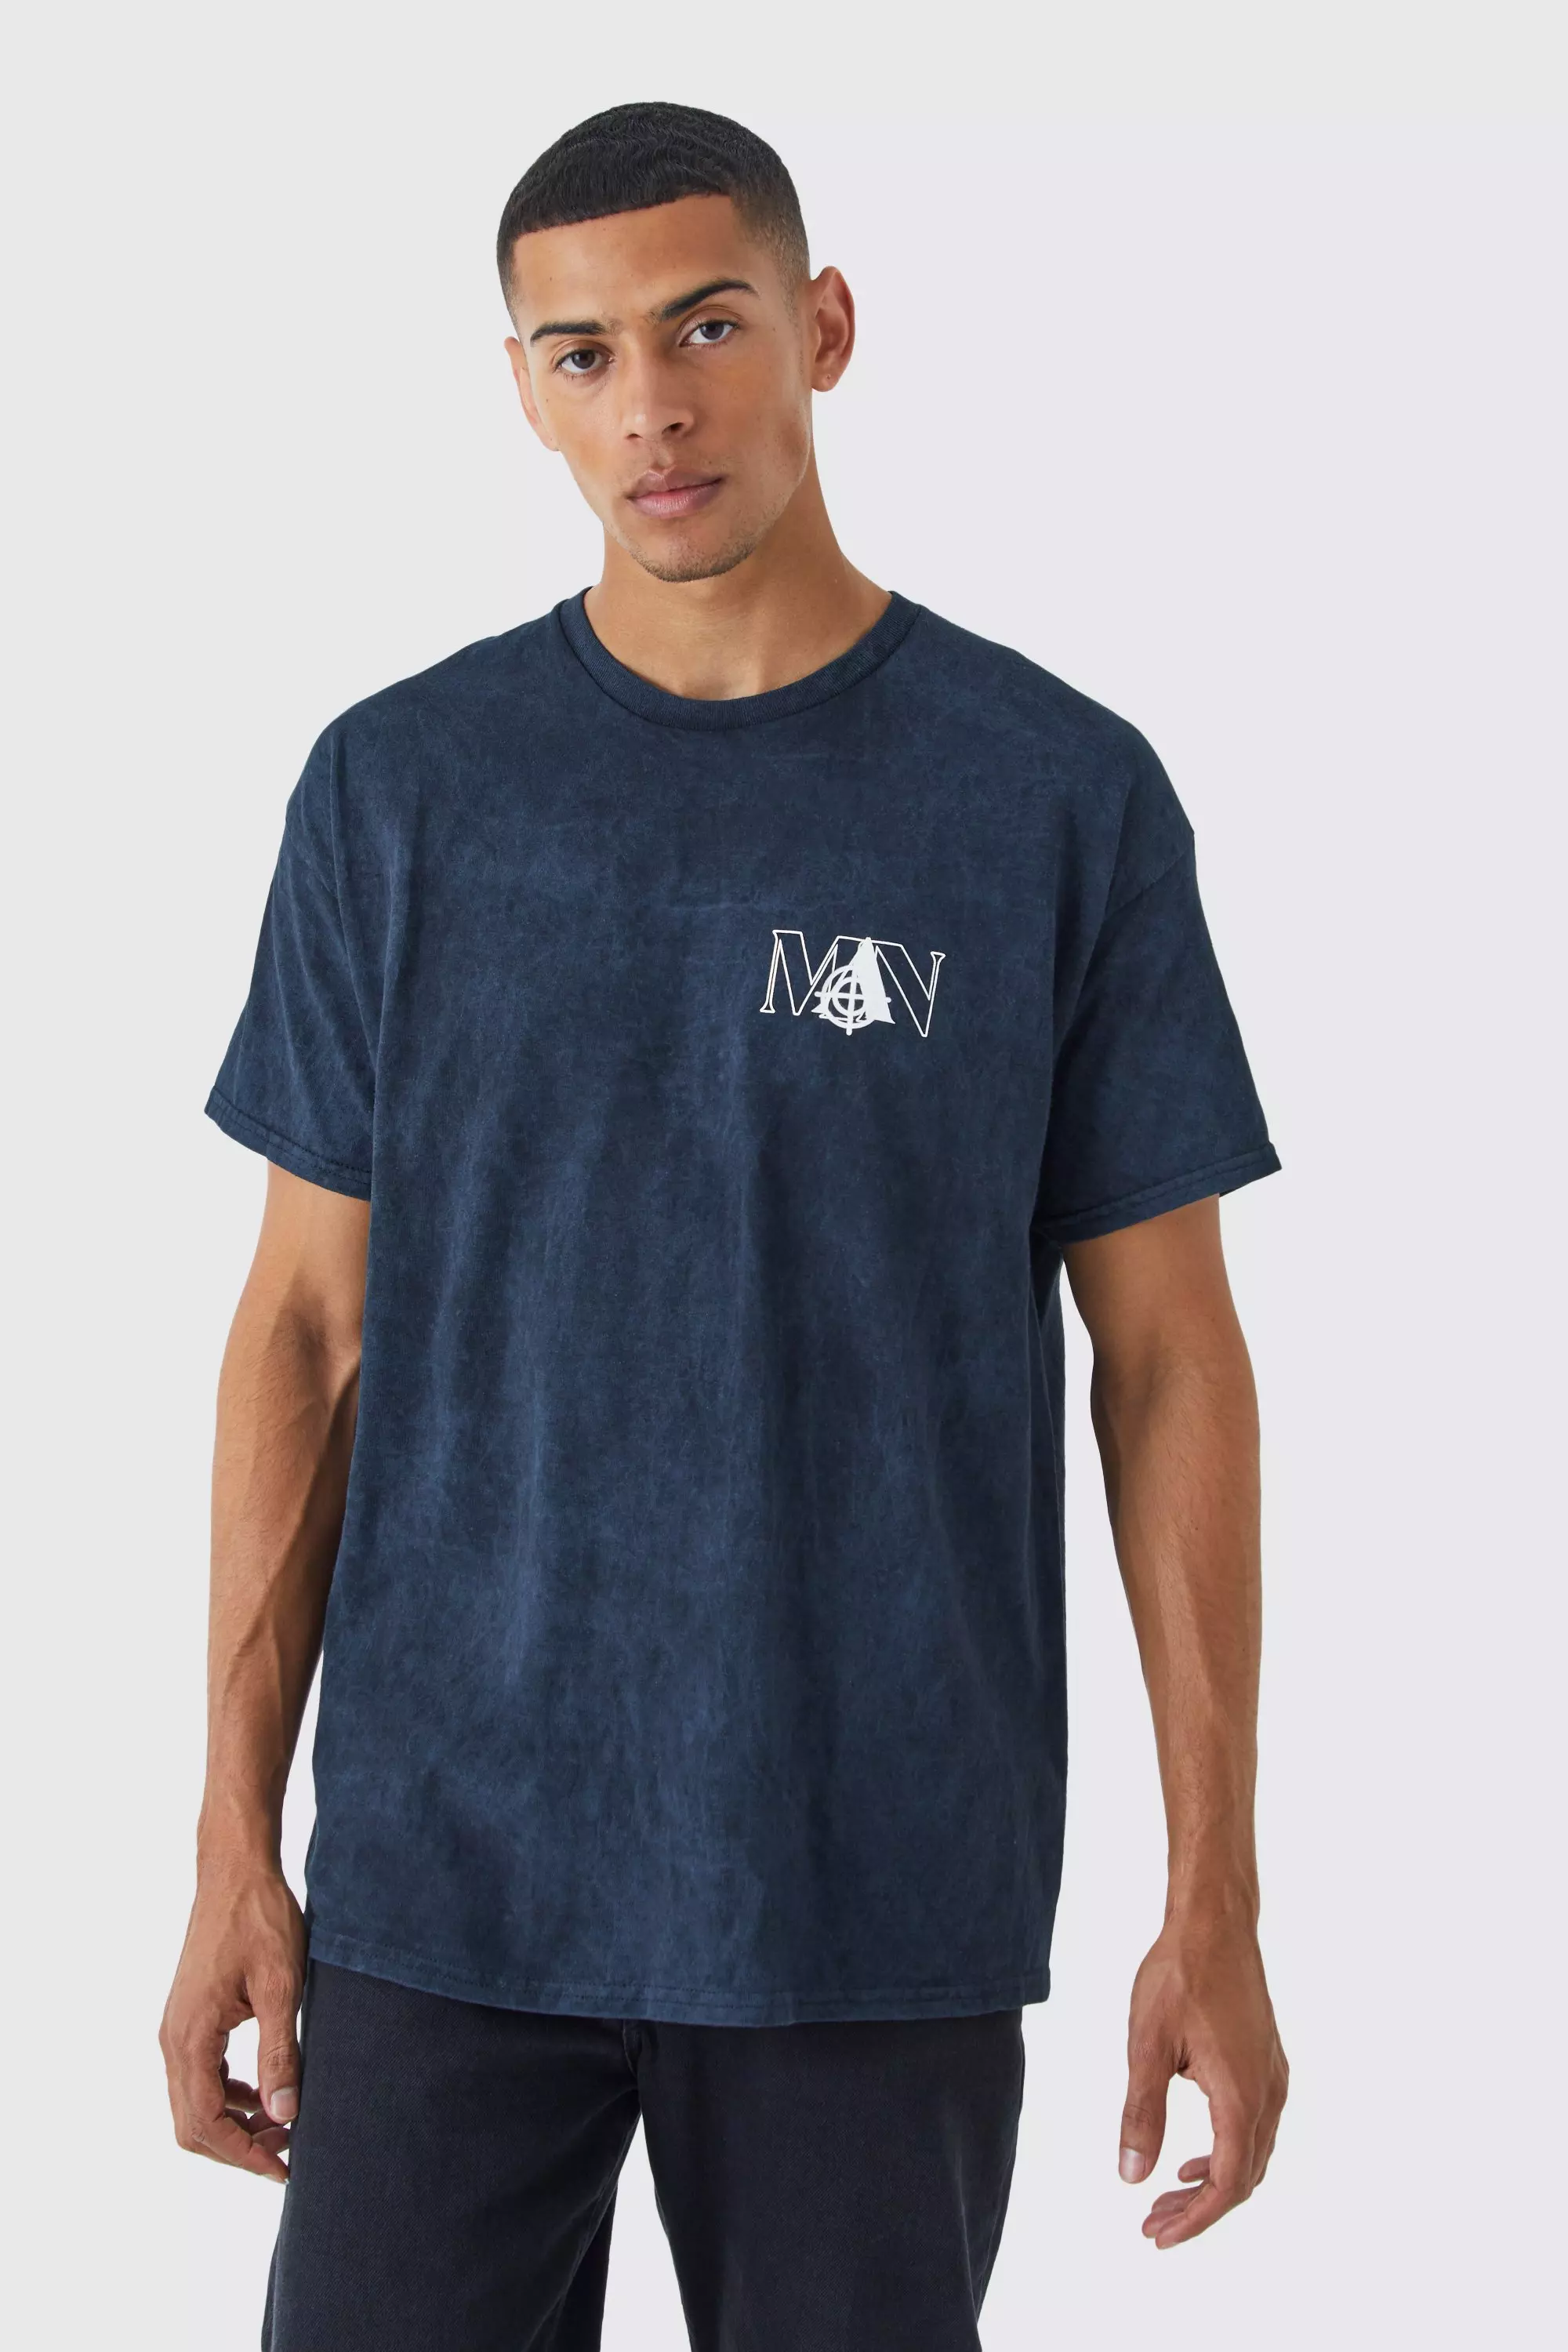 Oversized Acid Wash Man Graphic T-shirt Black